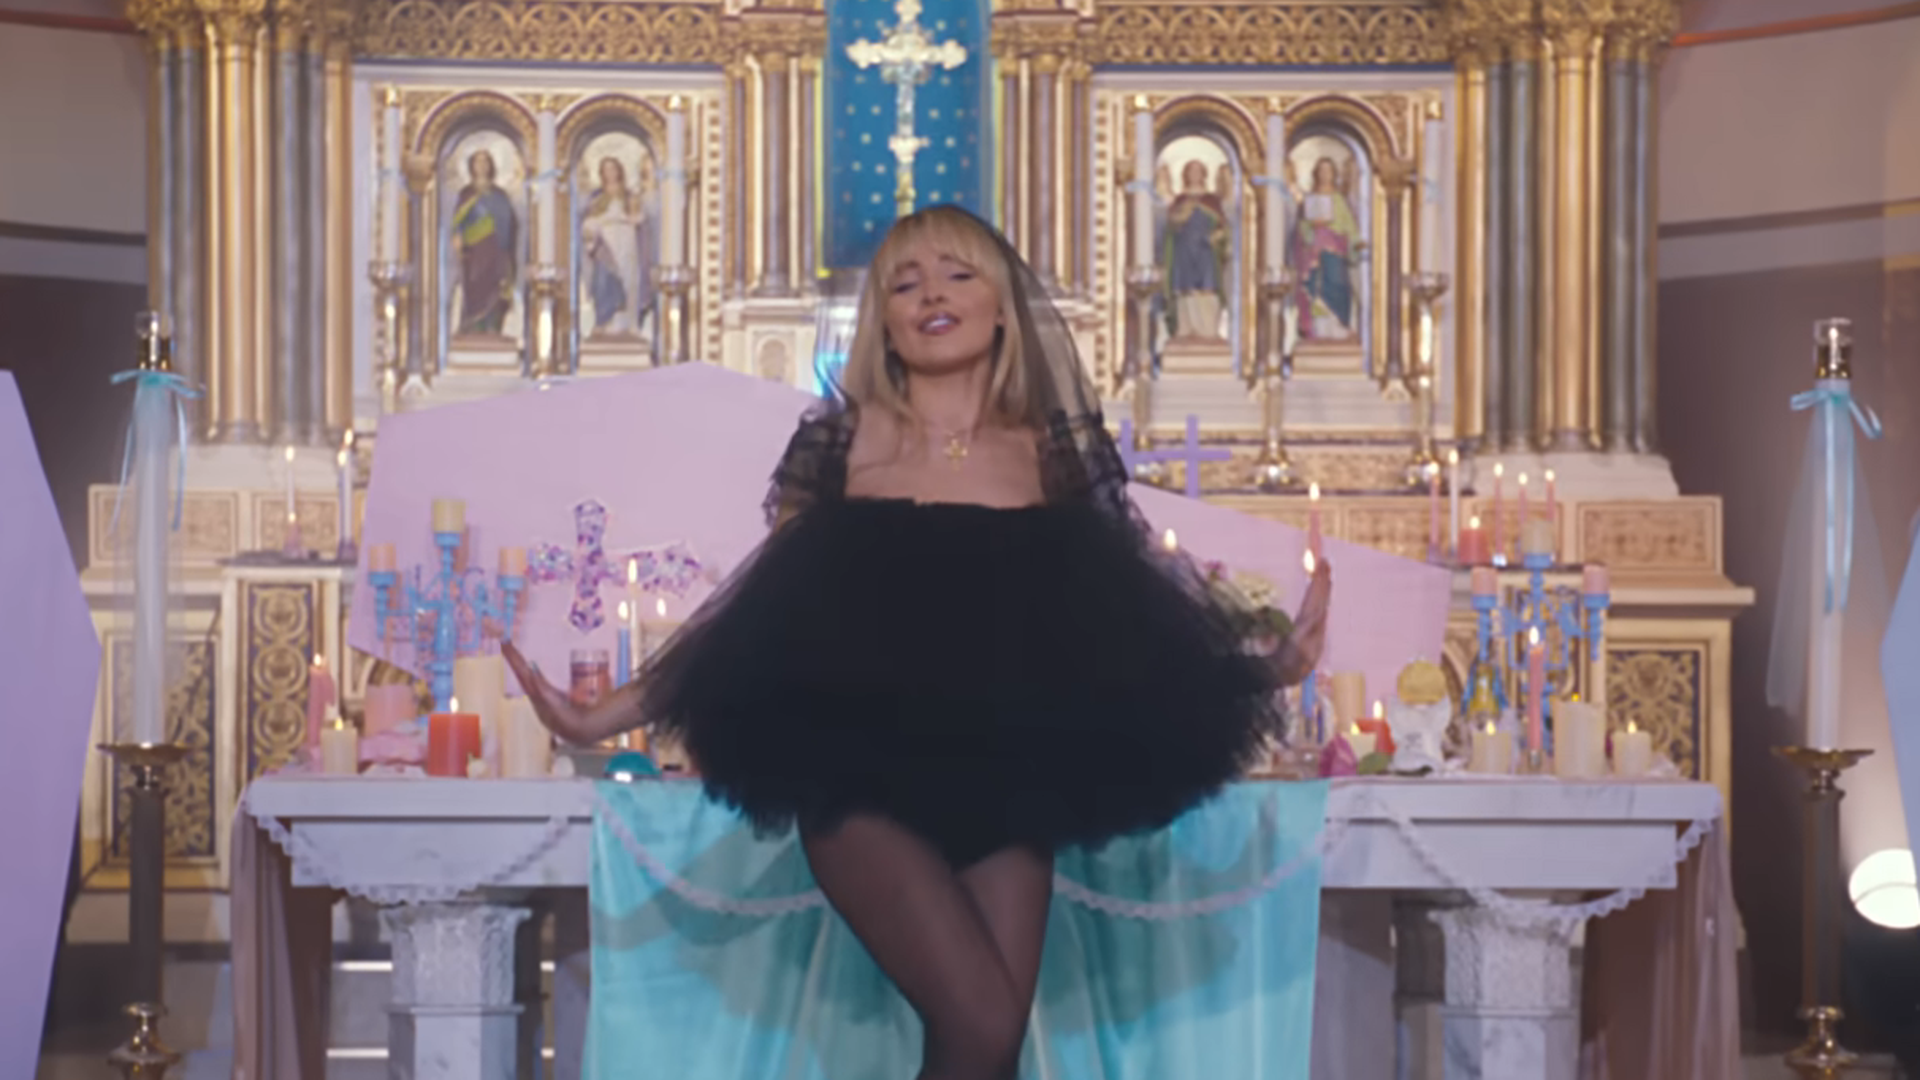 Pjevačica snimila provokativni spot u crkvi: Katolici bijesni, a svećeniku oduzete dužnosti...